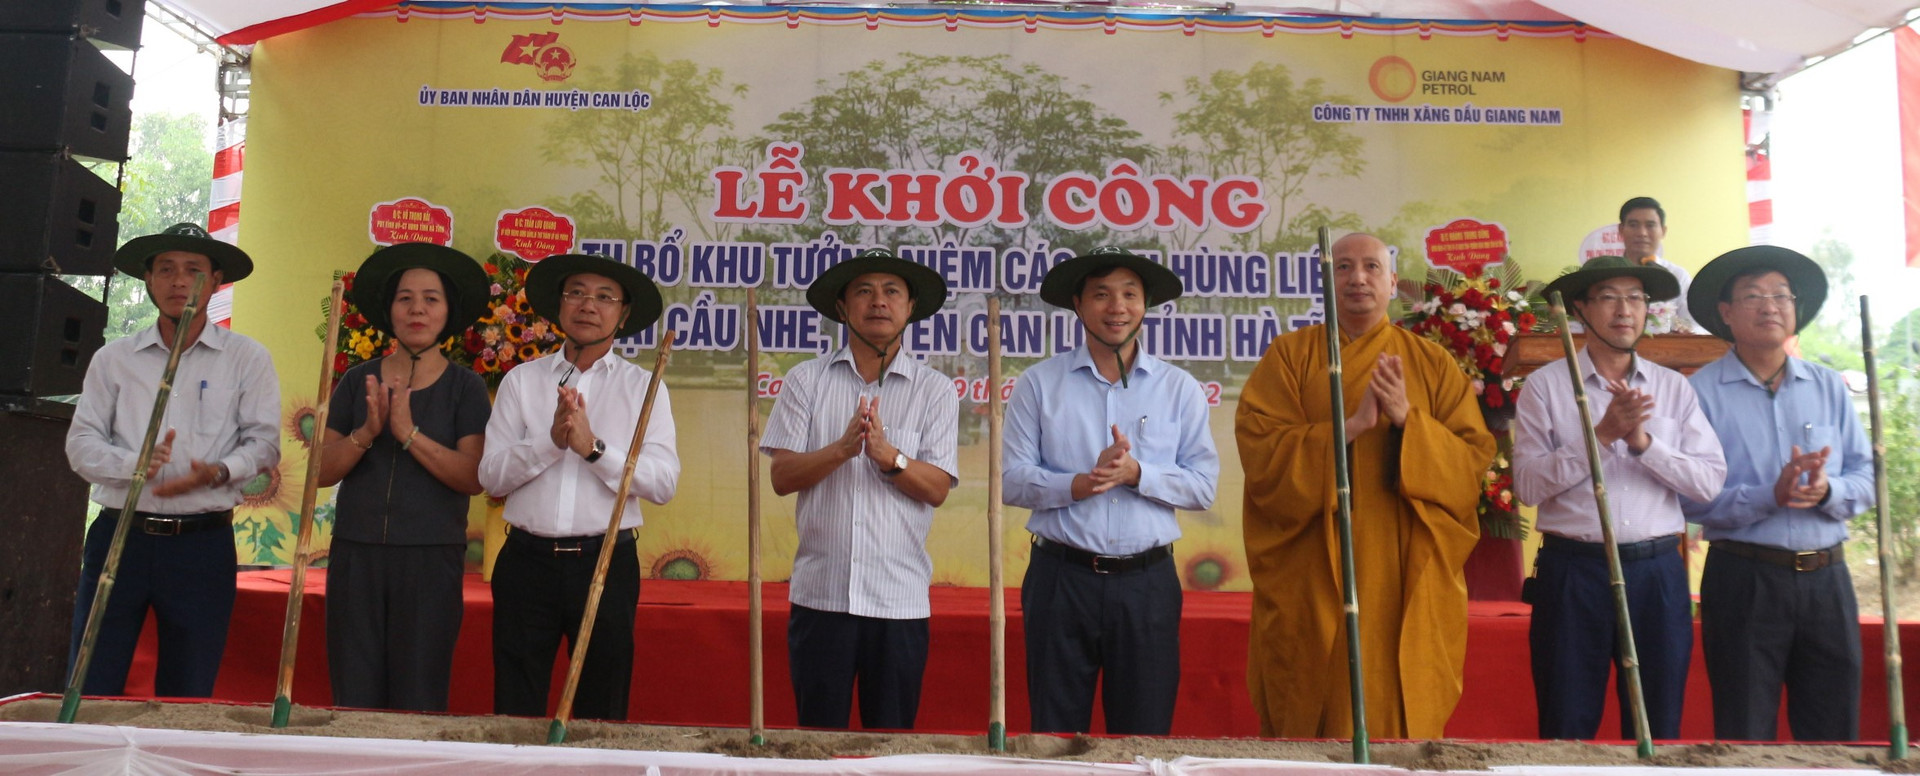 Dự án tu bổ Khu tưởng niệm các anh hùng, liệt sĩ Cầu Nhe (huyện Can Lộc, Hà Tĩnh) có tổng mức đầu tư khoảng 5,2 tỷ đồng.